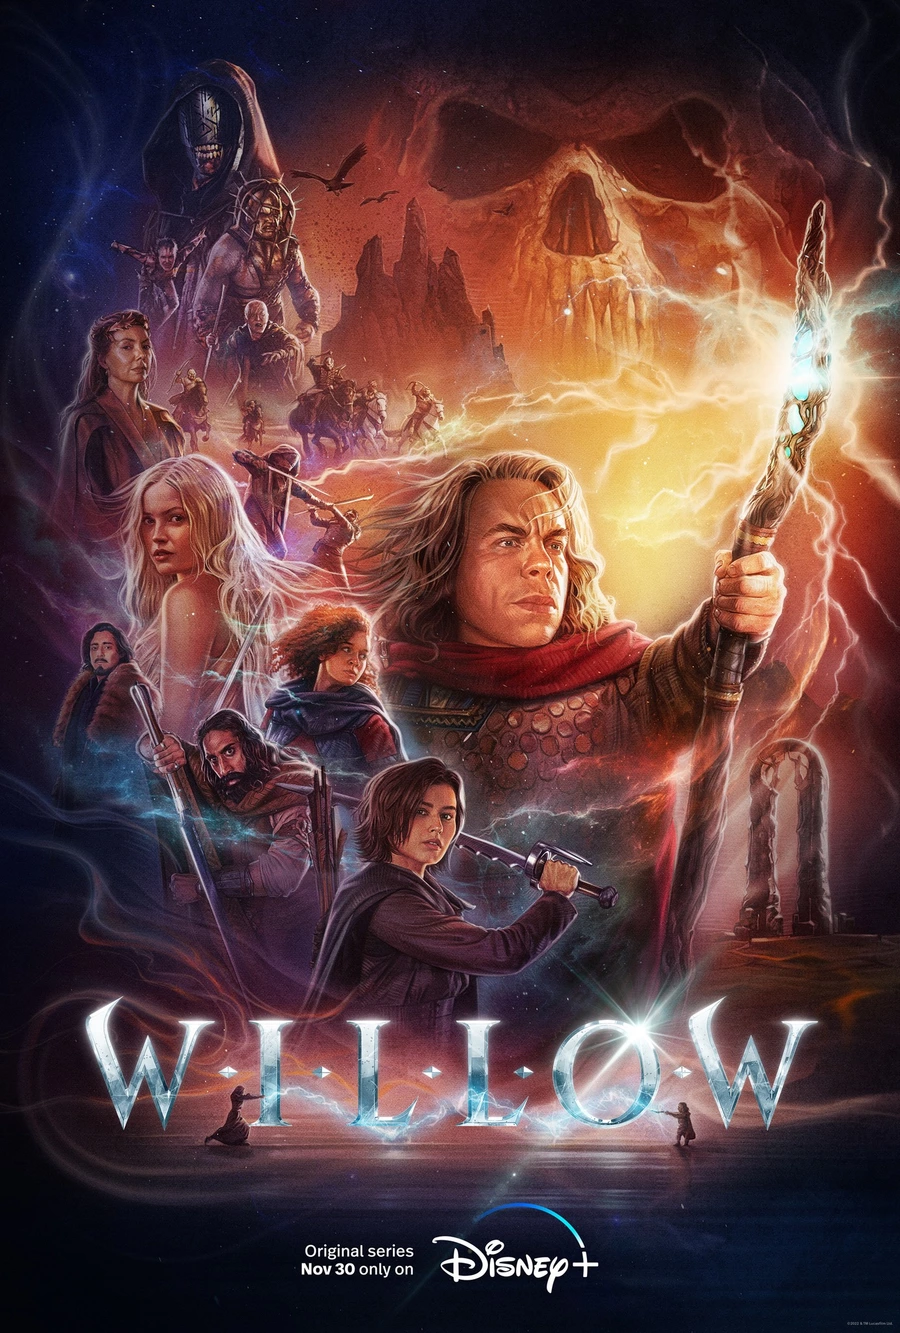 Heute war die Premiere der Fantasy-Serie «Willow», die eine Fortsetzung des Märchenfilms von 1988 ist.. 20 Jahre sind vergangen, seit Willow die böse Königin Bawmorda besiegt hat. Jetzt wartet ein neues Abenteuer auf ihn: Der Zauberer wird eine Gruppe von Außenseitern bei einer Rettungsmission anführen. Gemeinsam müssen sie sich ins Unbekannte begeben.